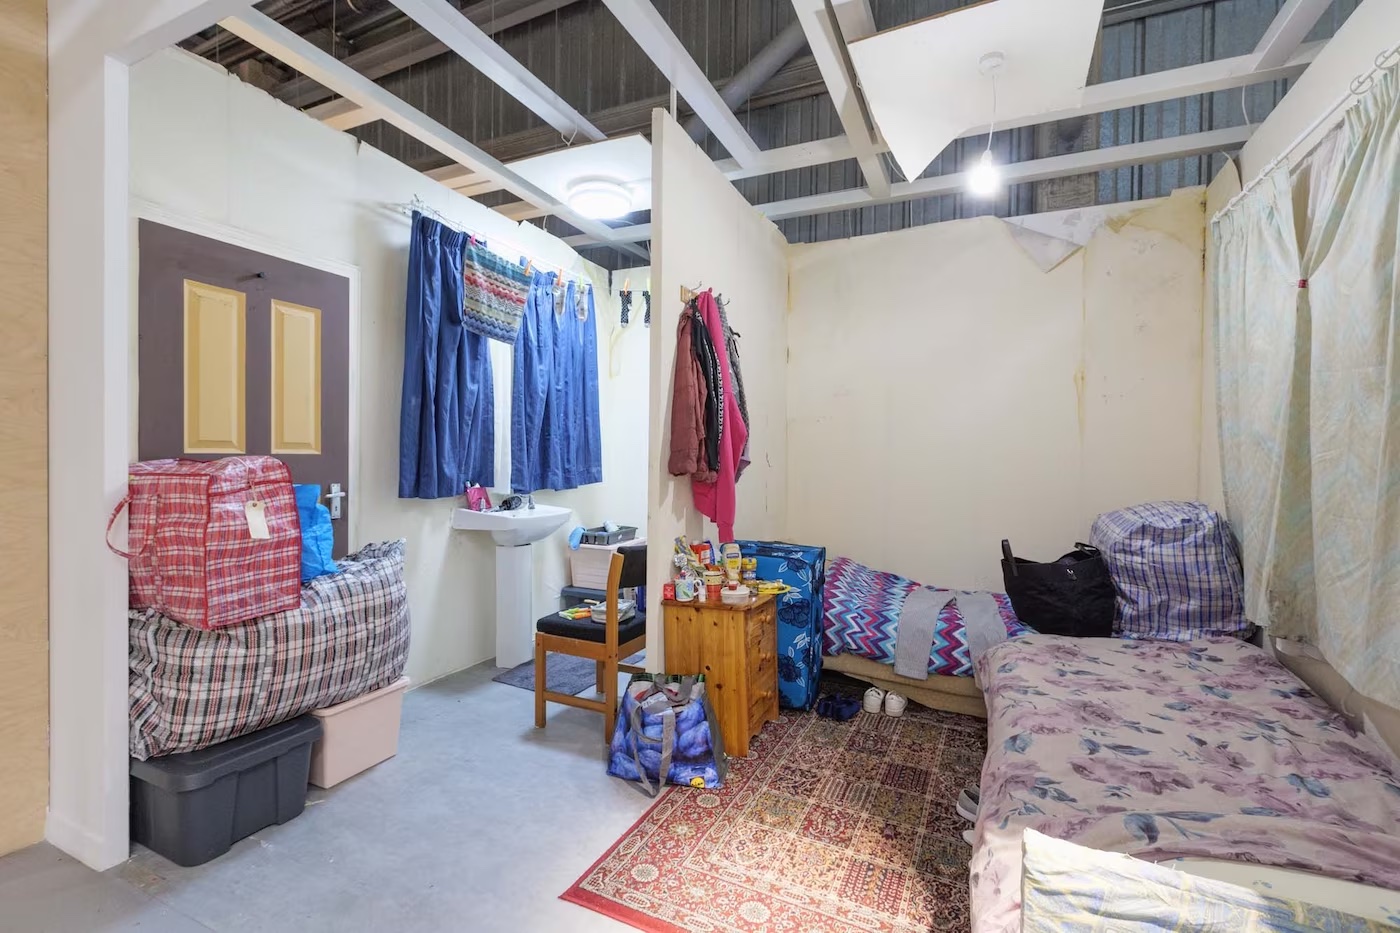 Ikea sensibiliseert voor wooncrisis met onleefbare kamers in zijn winkels (by Focalys)